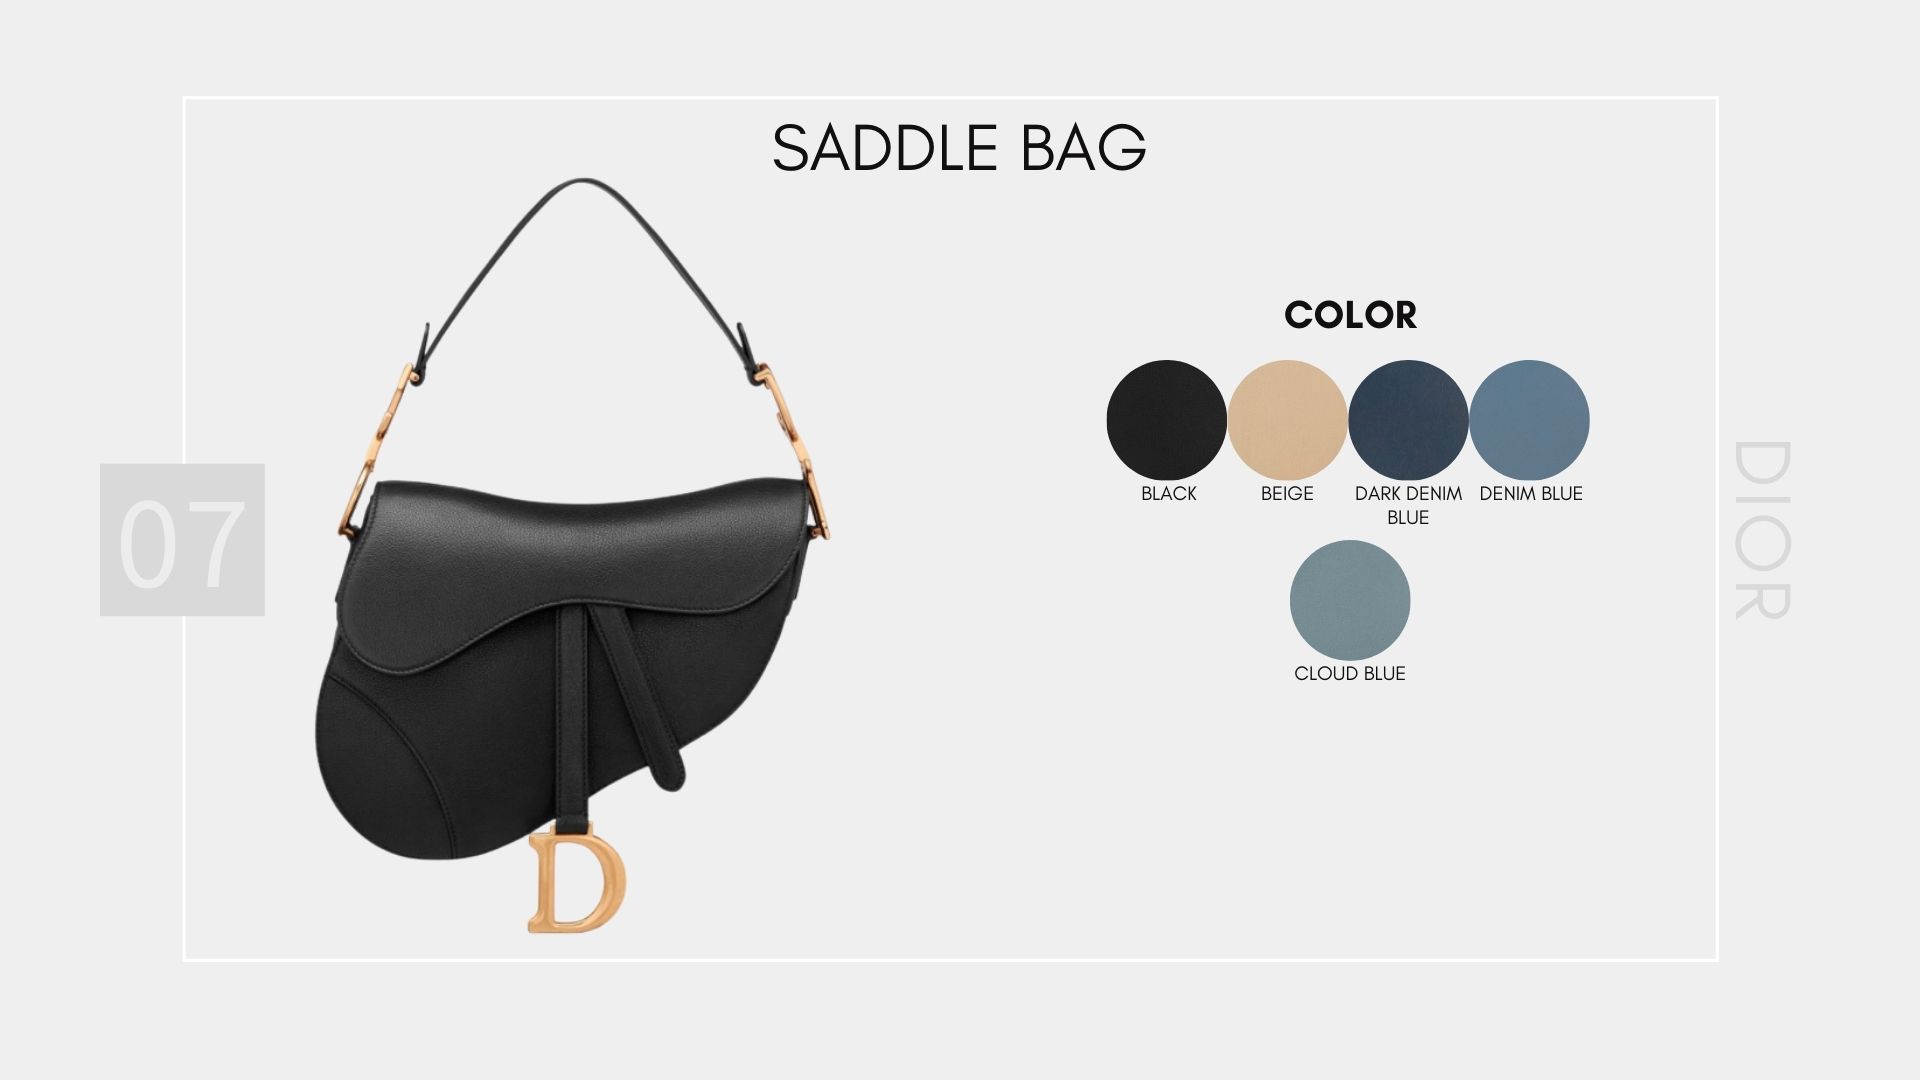 รวม Item Dior Collection ใหม่  Saddle Bag